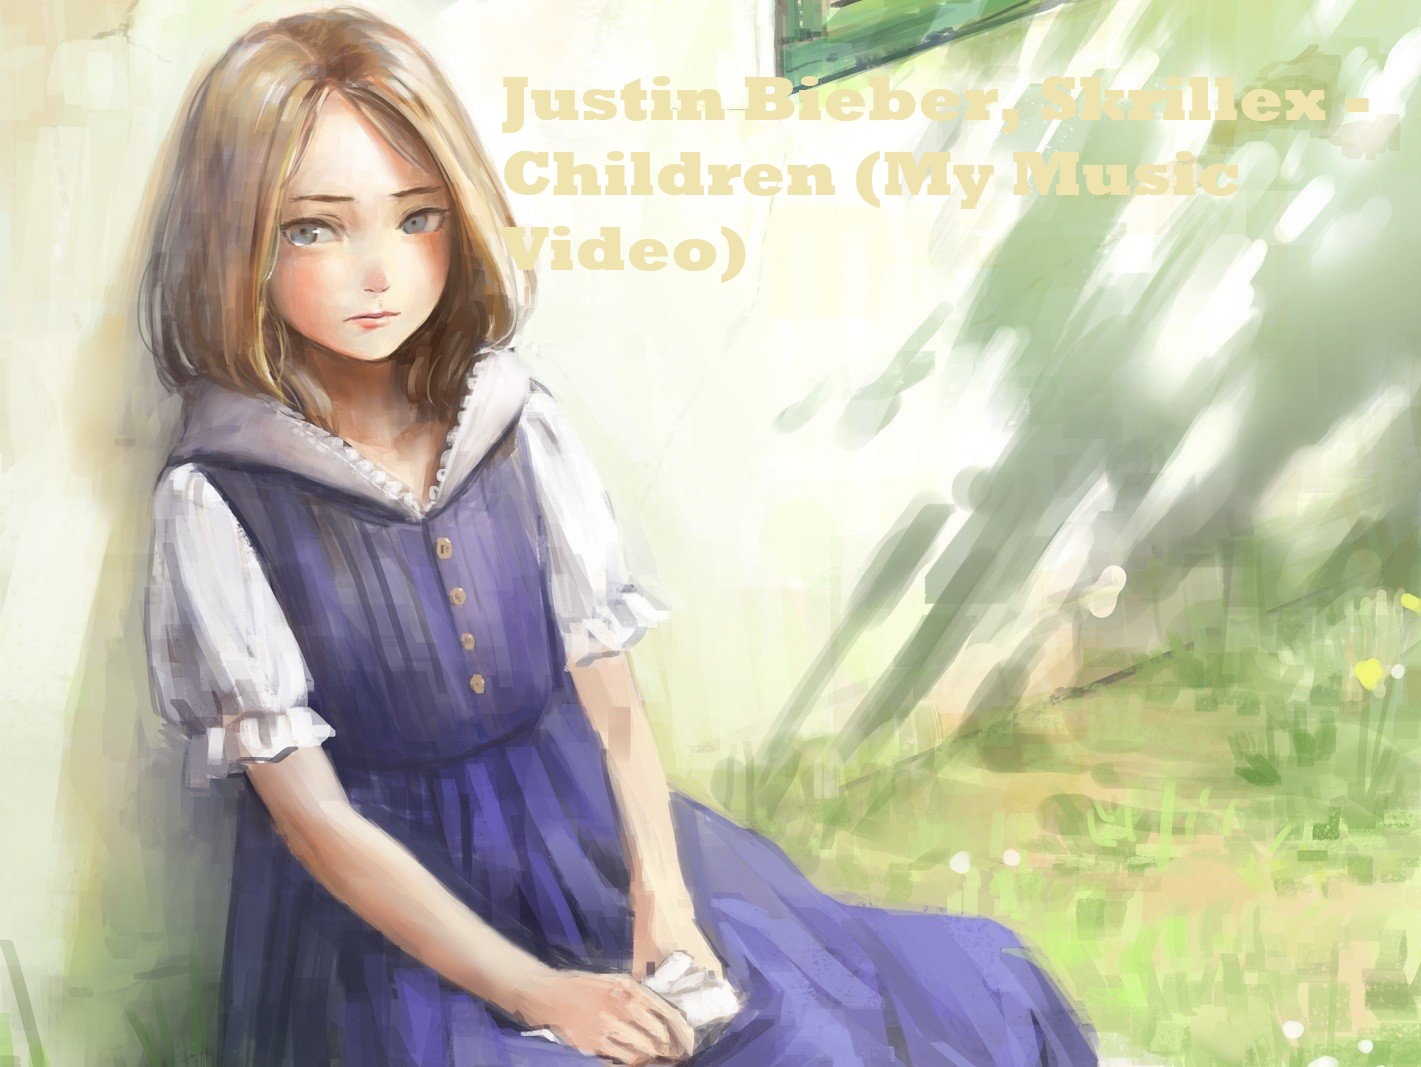 Justin Bieber, Skrillex - Children (My Music Video)